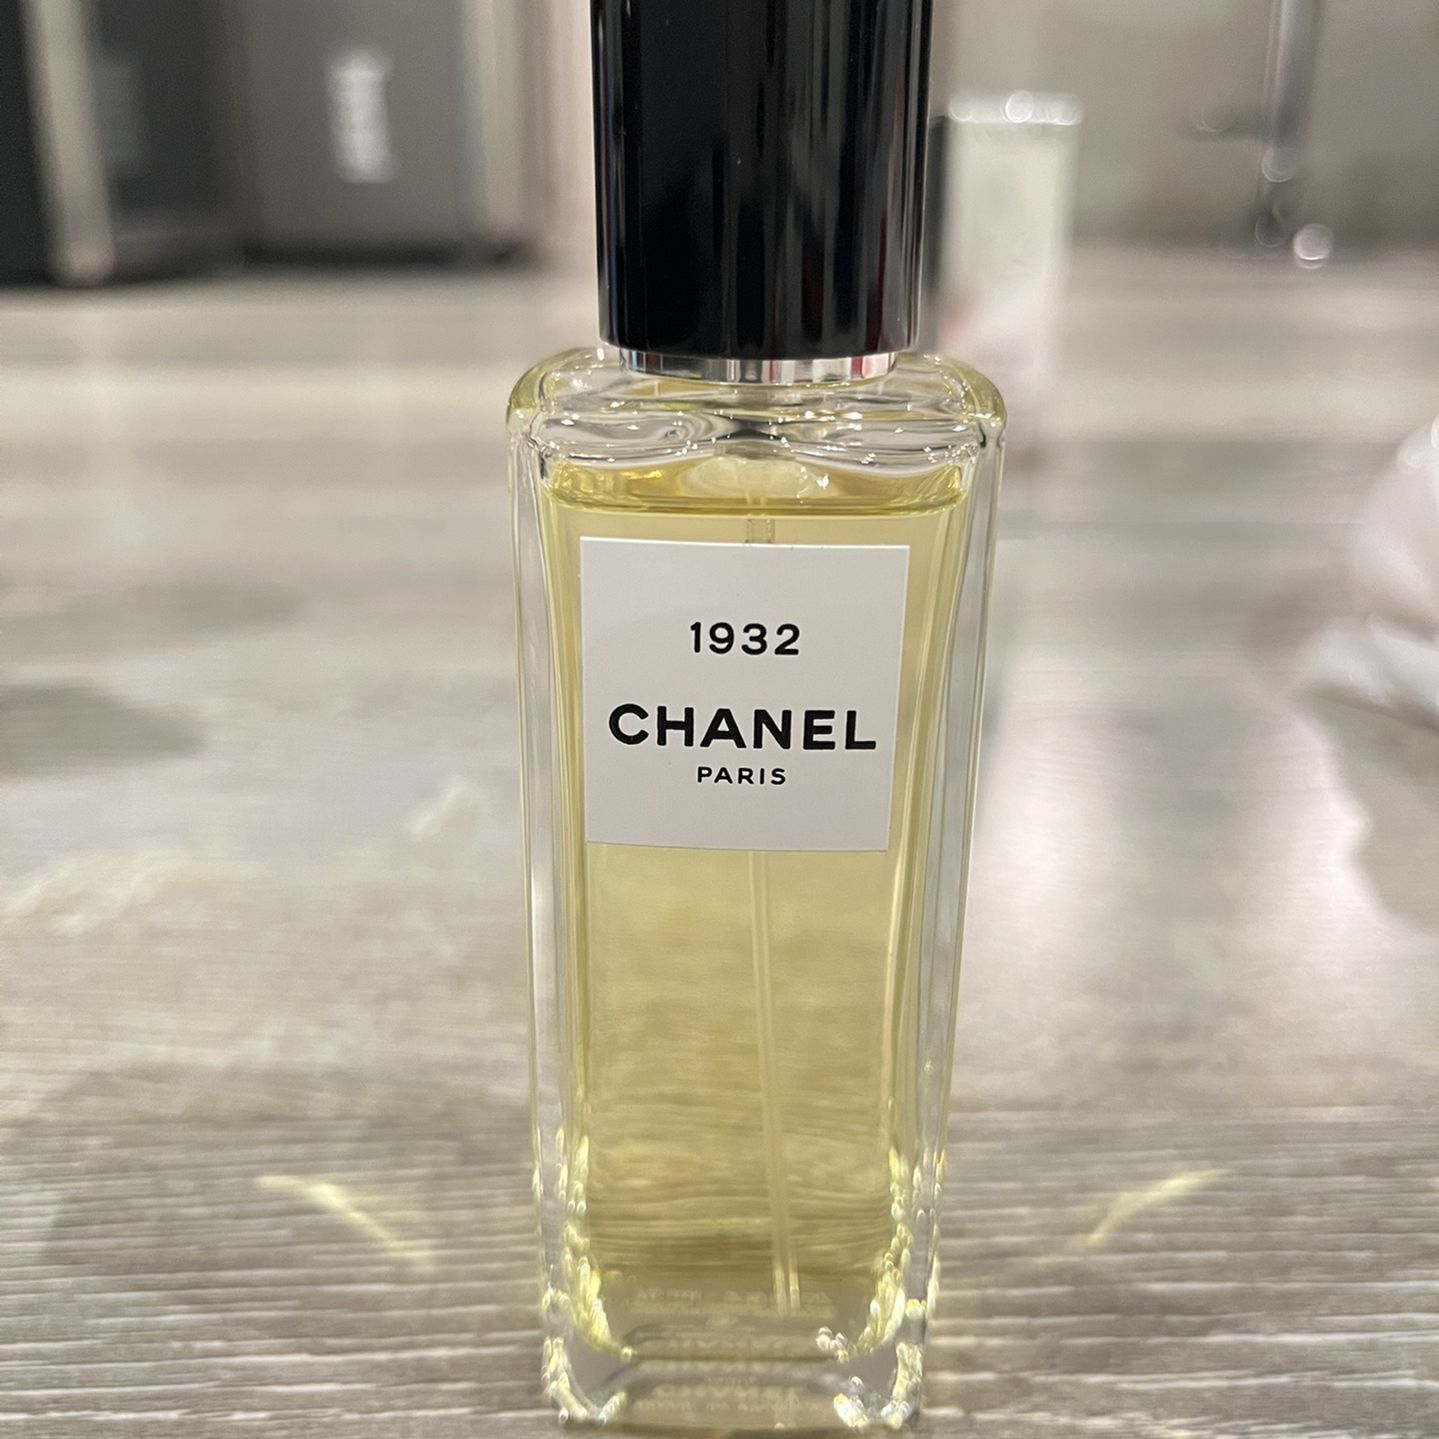 Chanel Gabrielle Eau De Parfum 3.4 oz Woman's for Sale in Long Beach, CA -  OfferUp